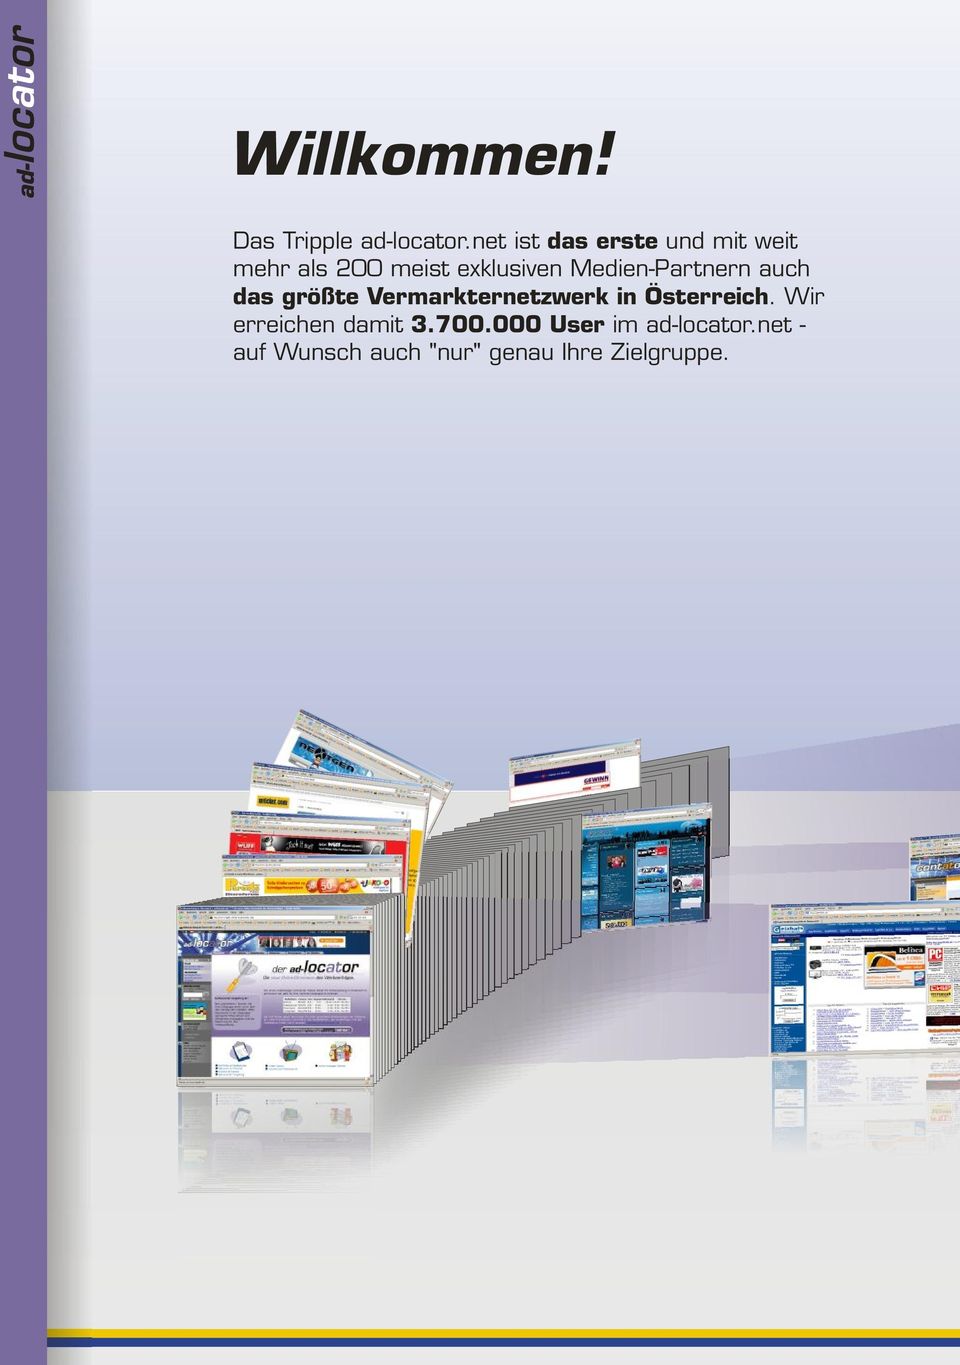 Medien-Partnern auch das größte Vermarkternetzwerk in Österreich.